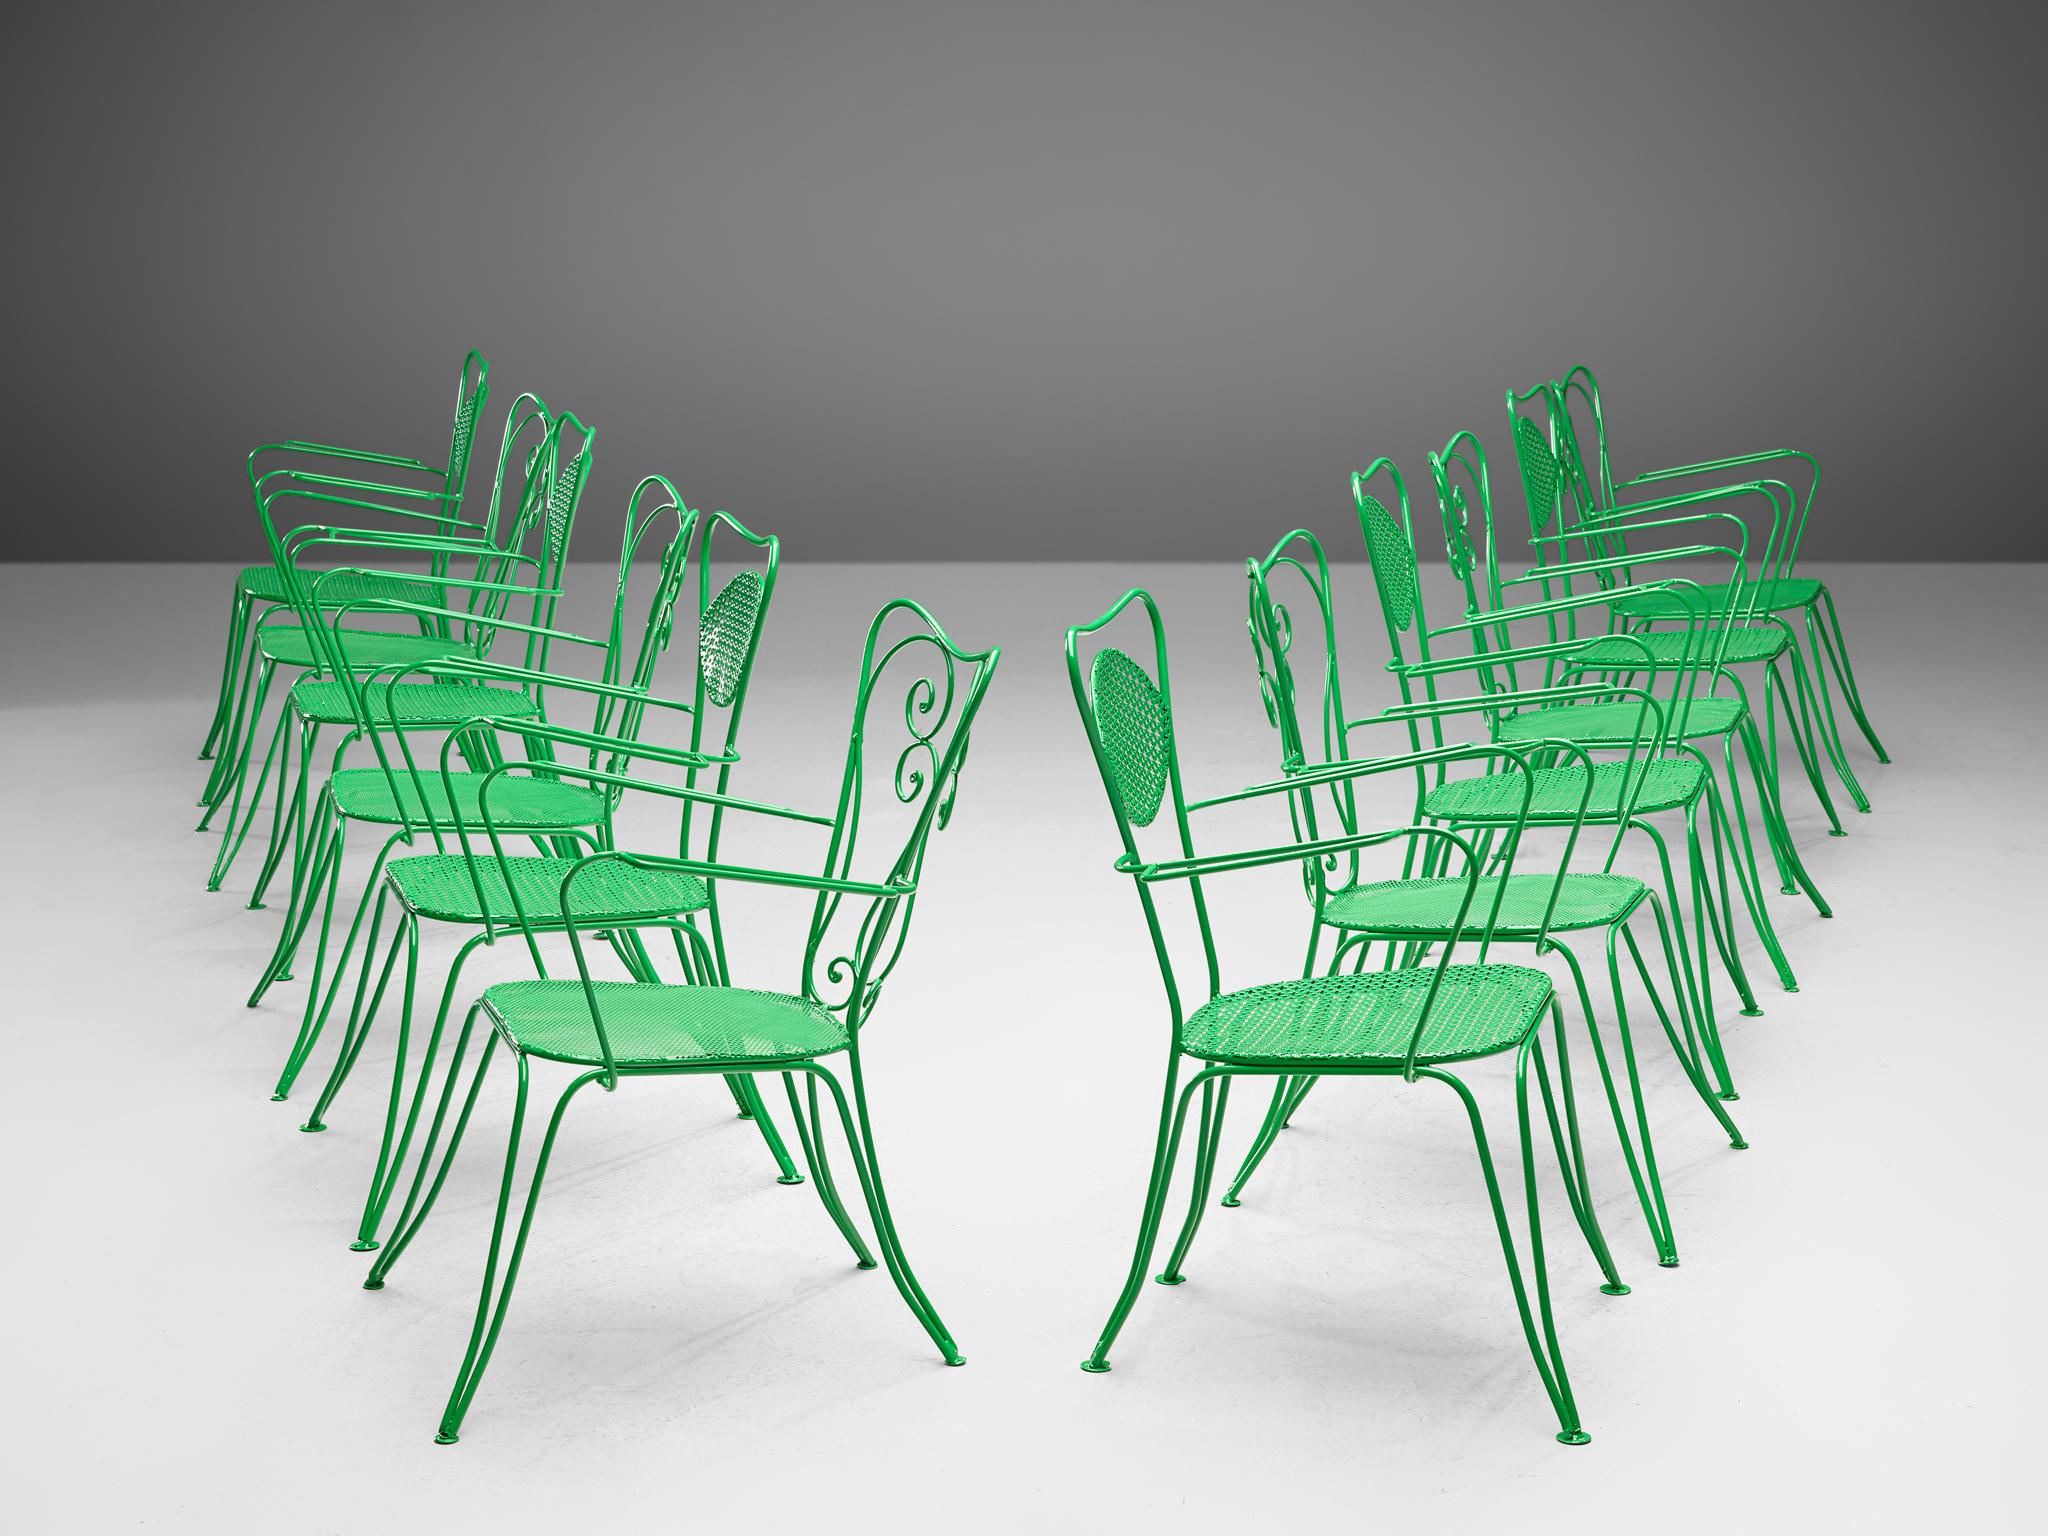 Terrassenstühle für den Essbereich, lackierter Stahl, Italien, 1960er Jahre

Diese Kollektion von Terrassenstühlen aus Italien besticht durch ihr raffiniertes Design, das den Inbegriff des italienischen Terrassenstuhls verkörpert. Die Stühle